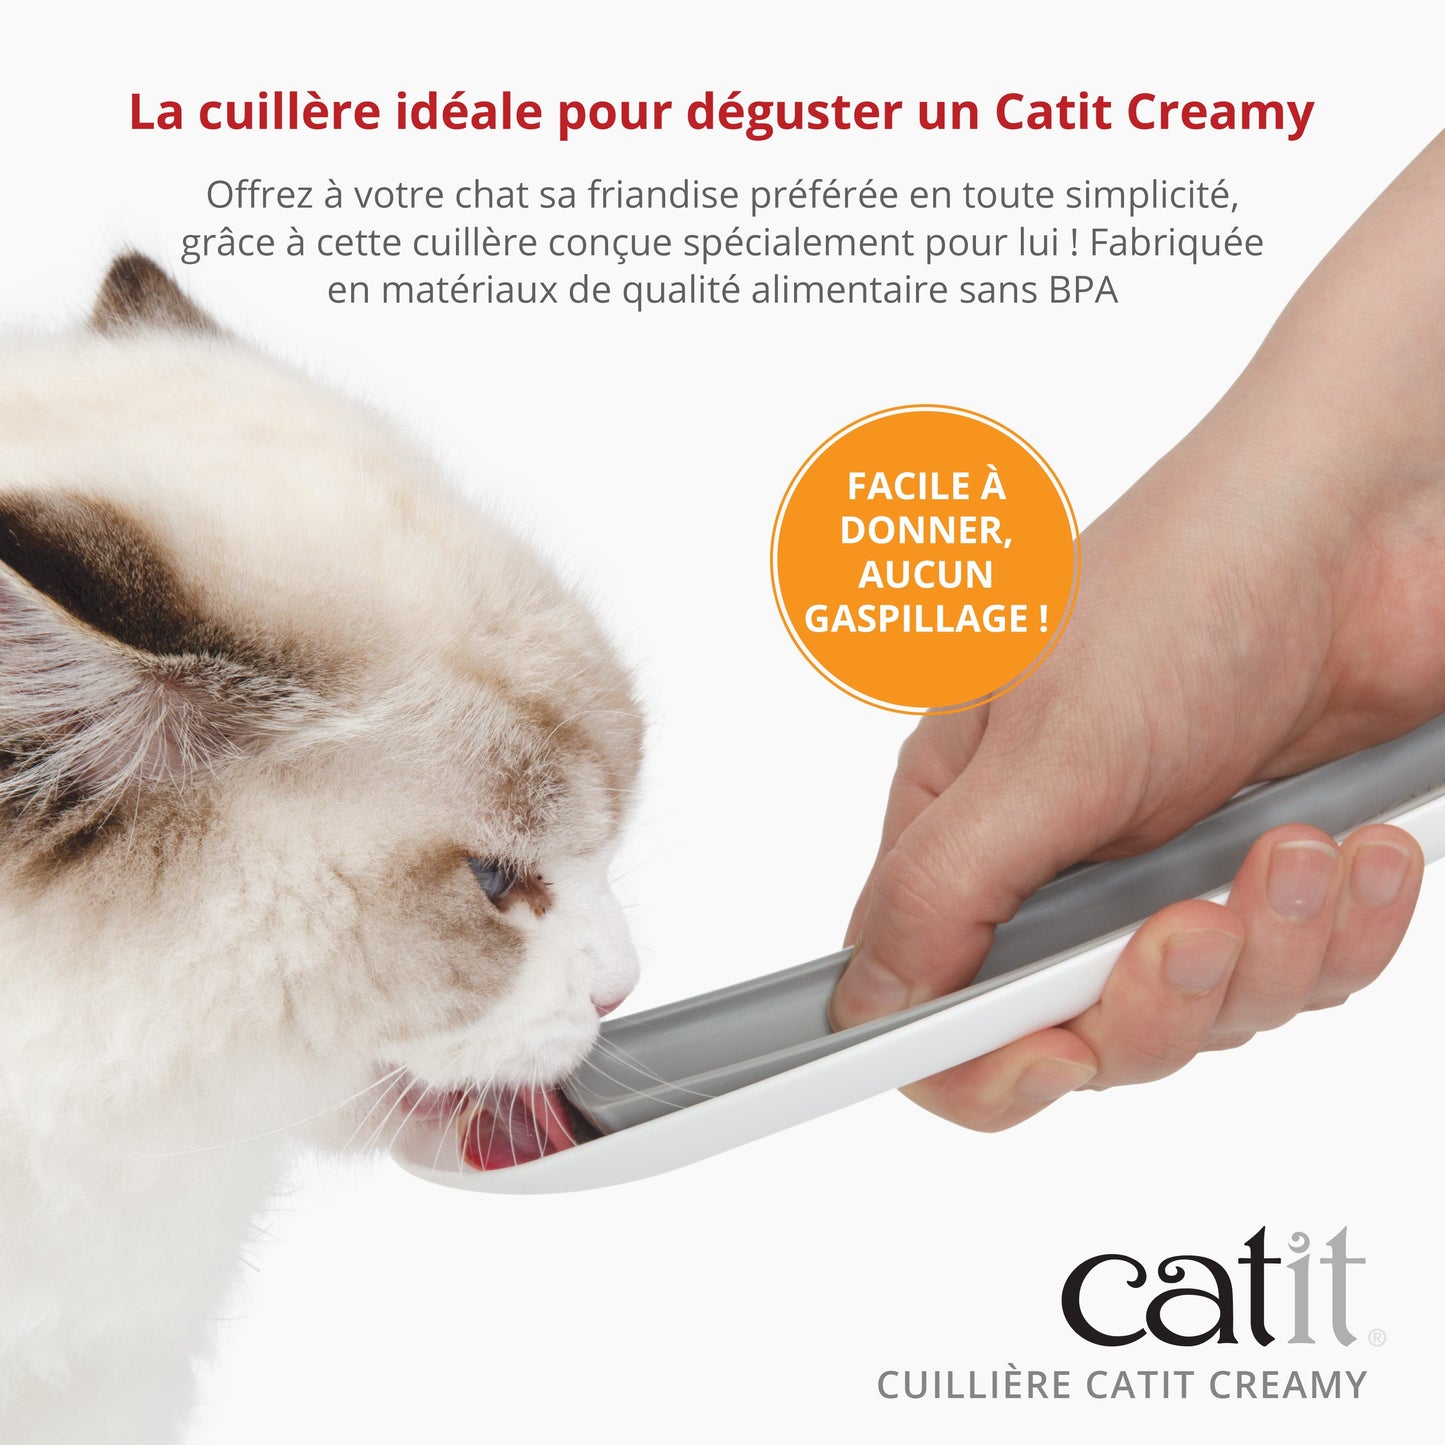 Cuillière Catit Creamy